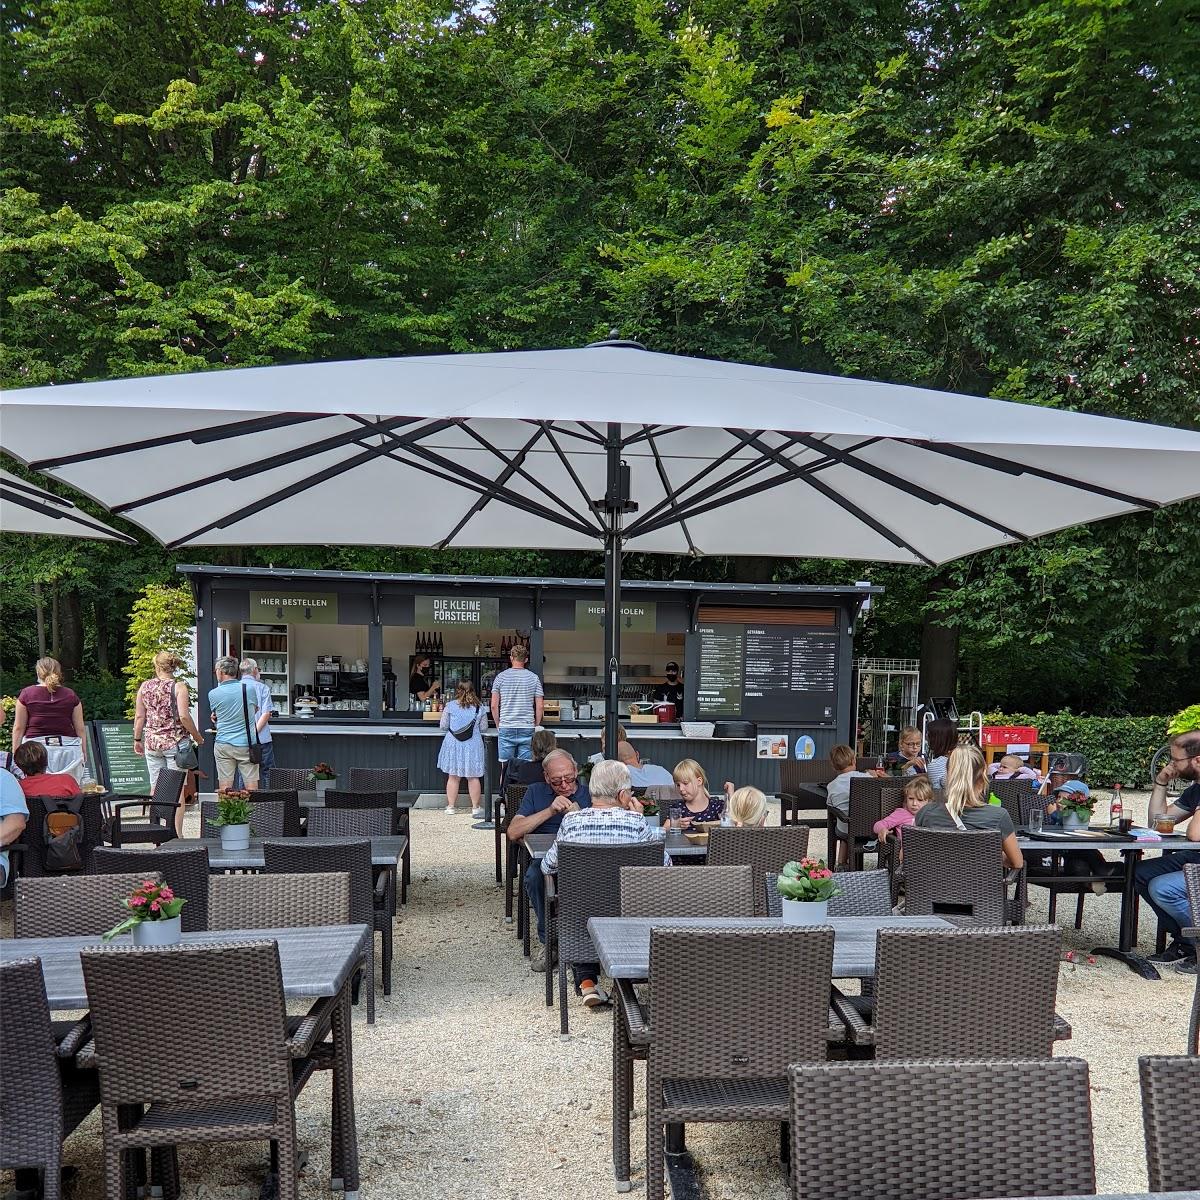 Restaurant "Die Försterei am Baumwipfelpfad" in Bad Iburg